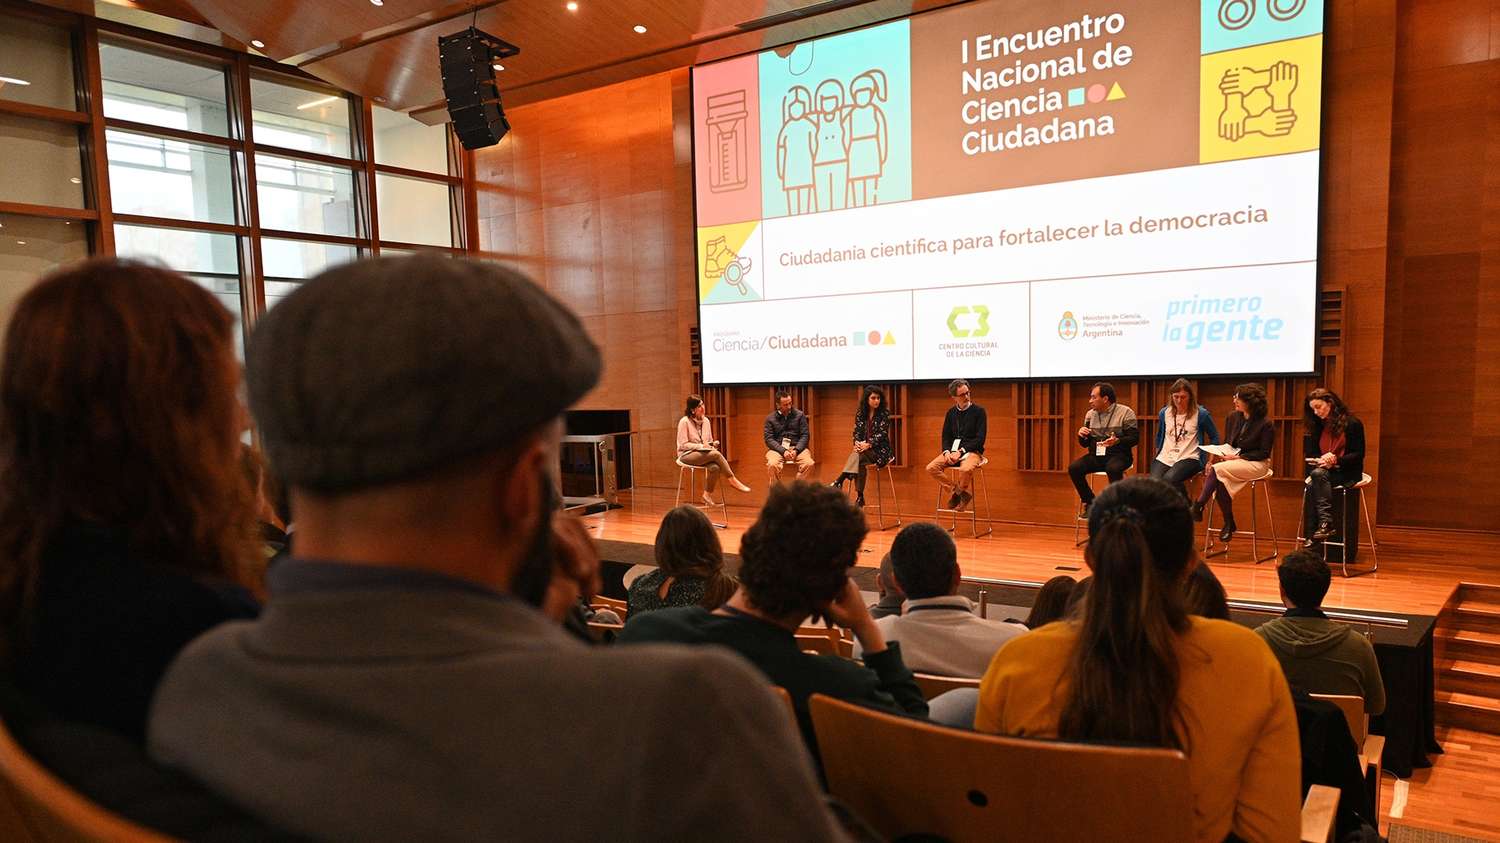 Comenzó el primer Encuentro Nacional de Ciencia Ciudadana con más de 200 participantes